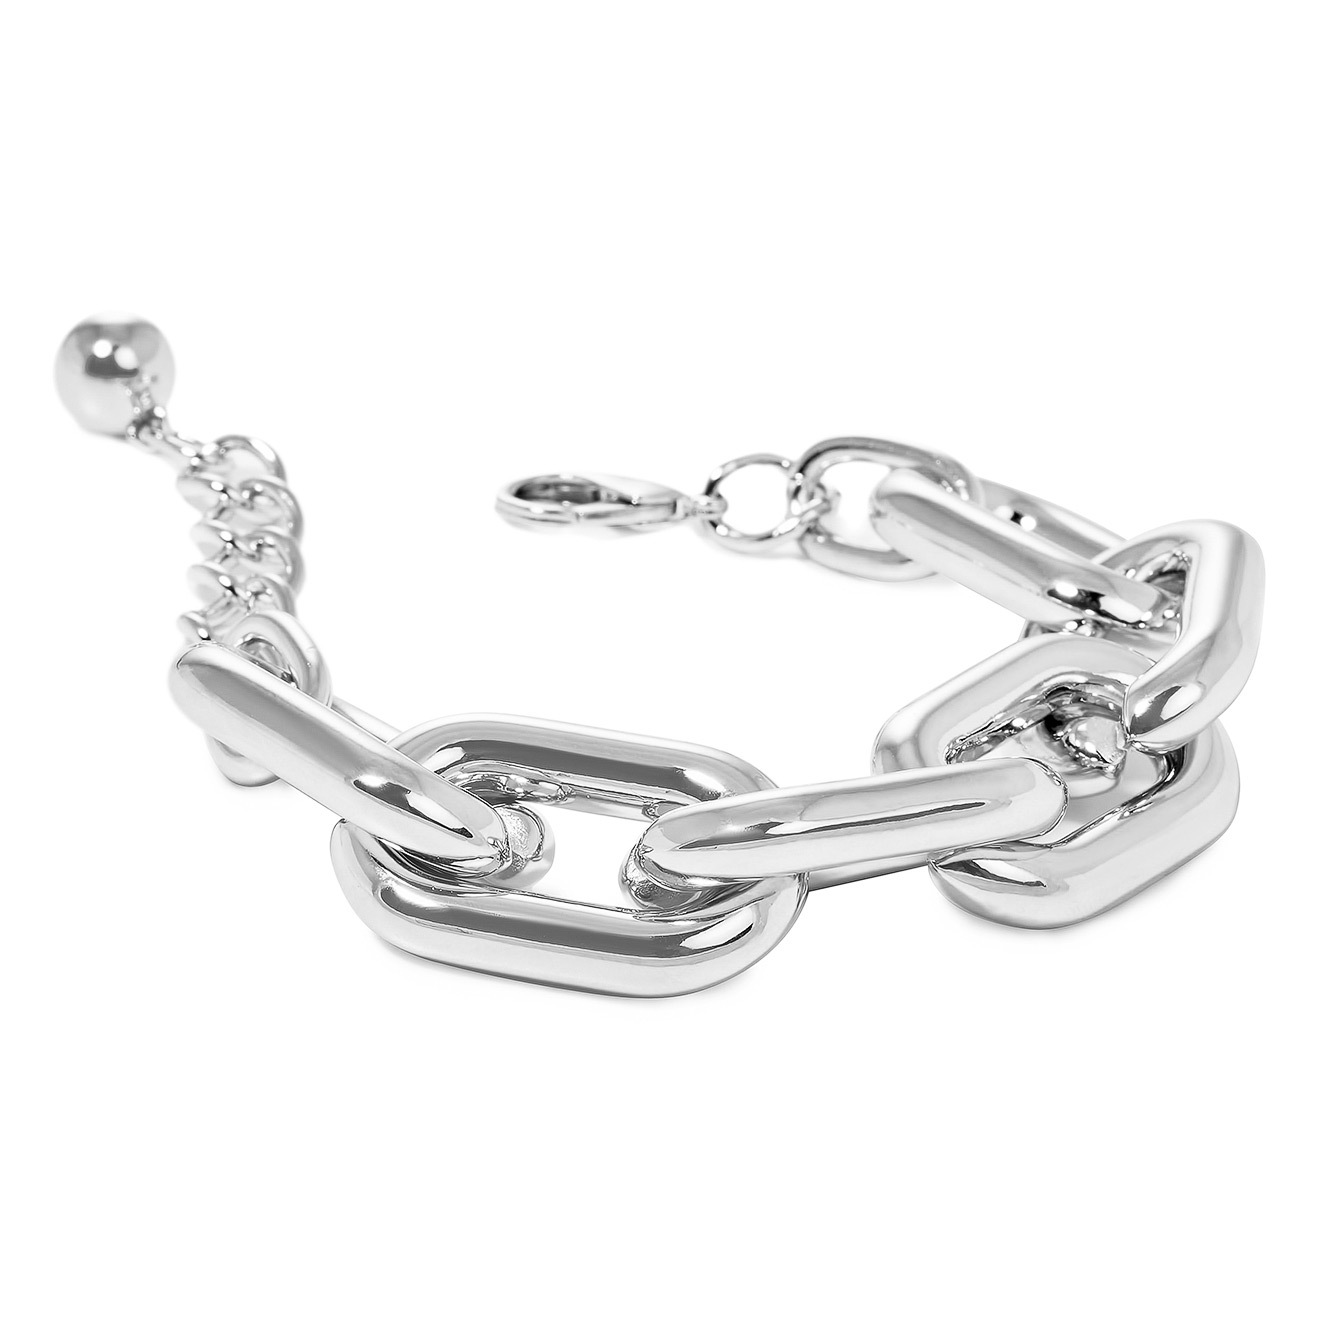 Aqua Серебристый браслет-цепь из крупных звеньев lisa smith серебристый браслет цепь из круглых звеньев